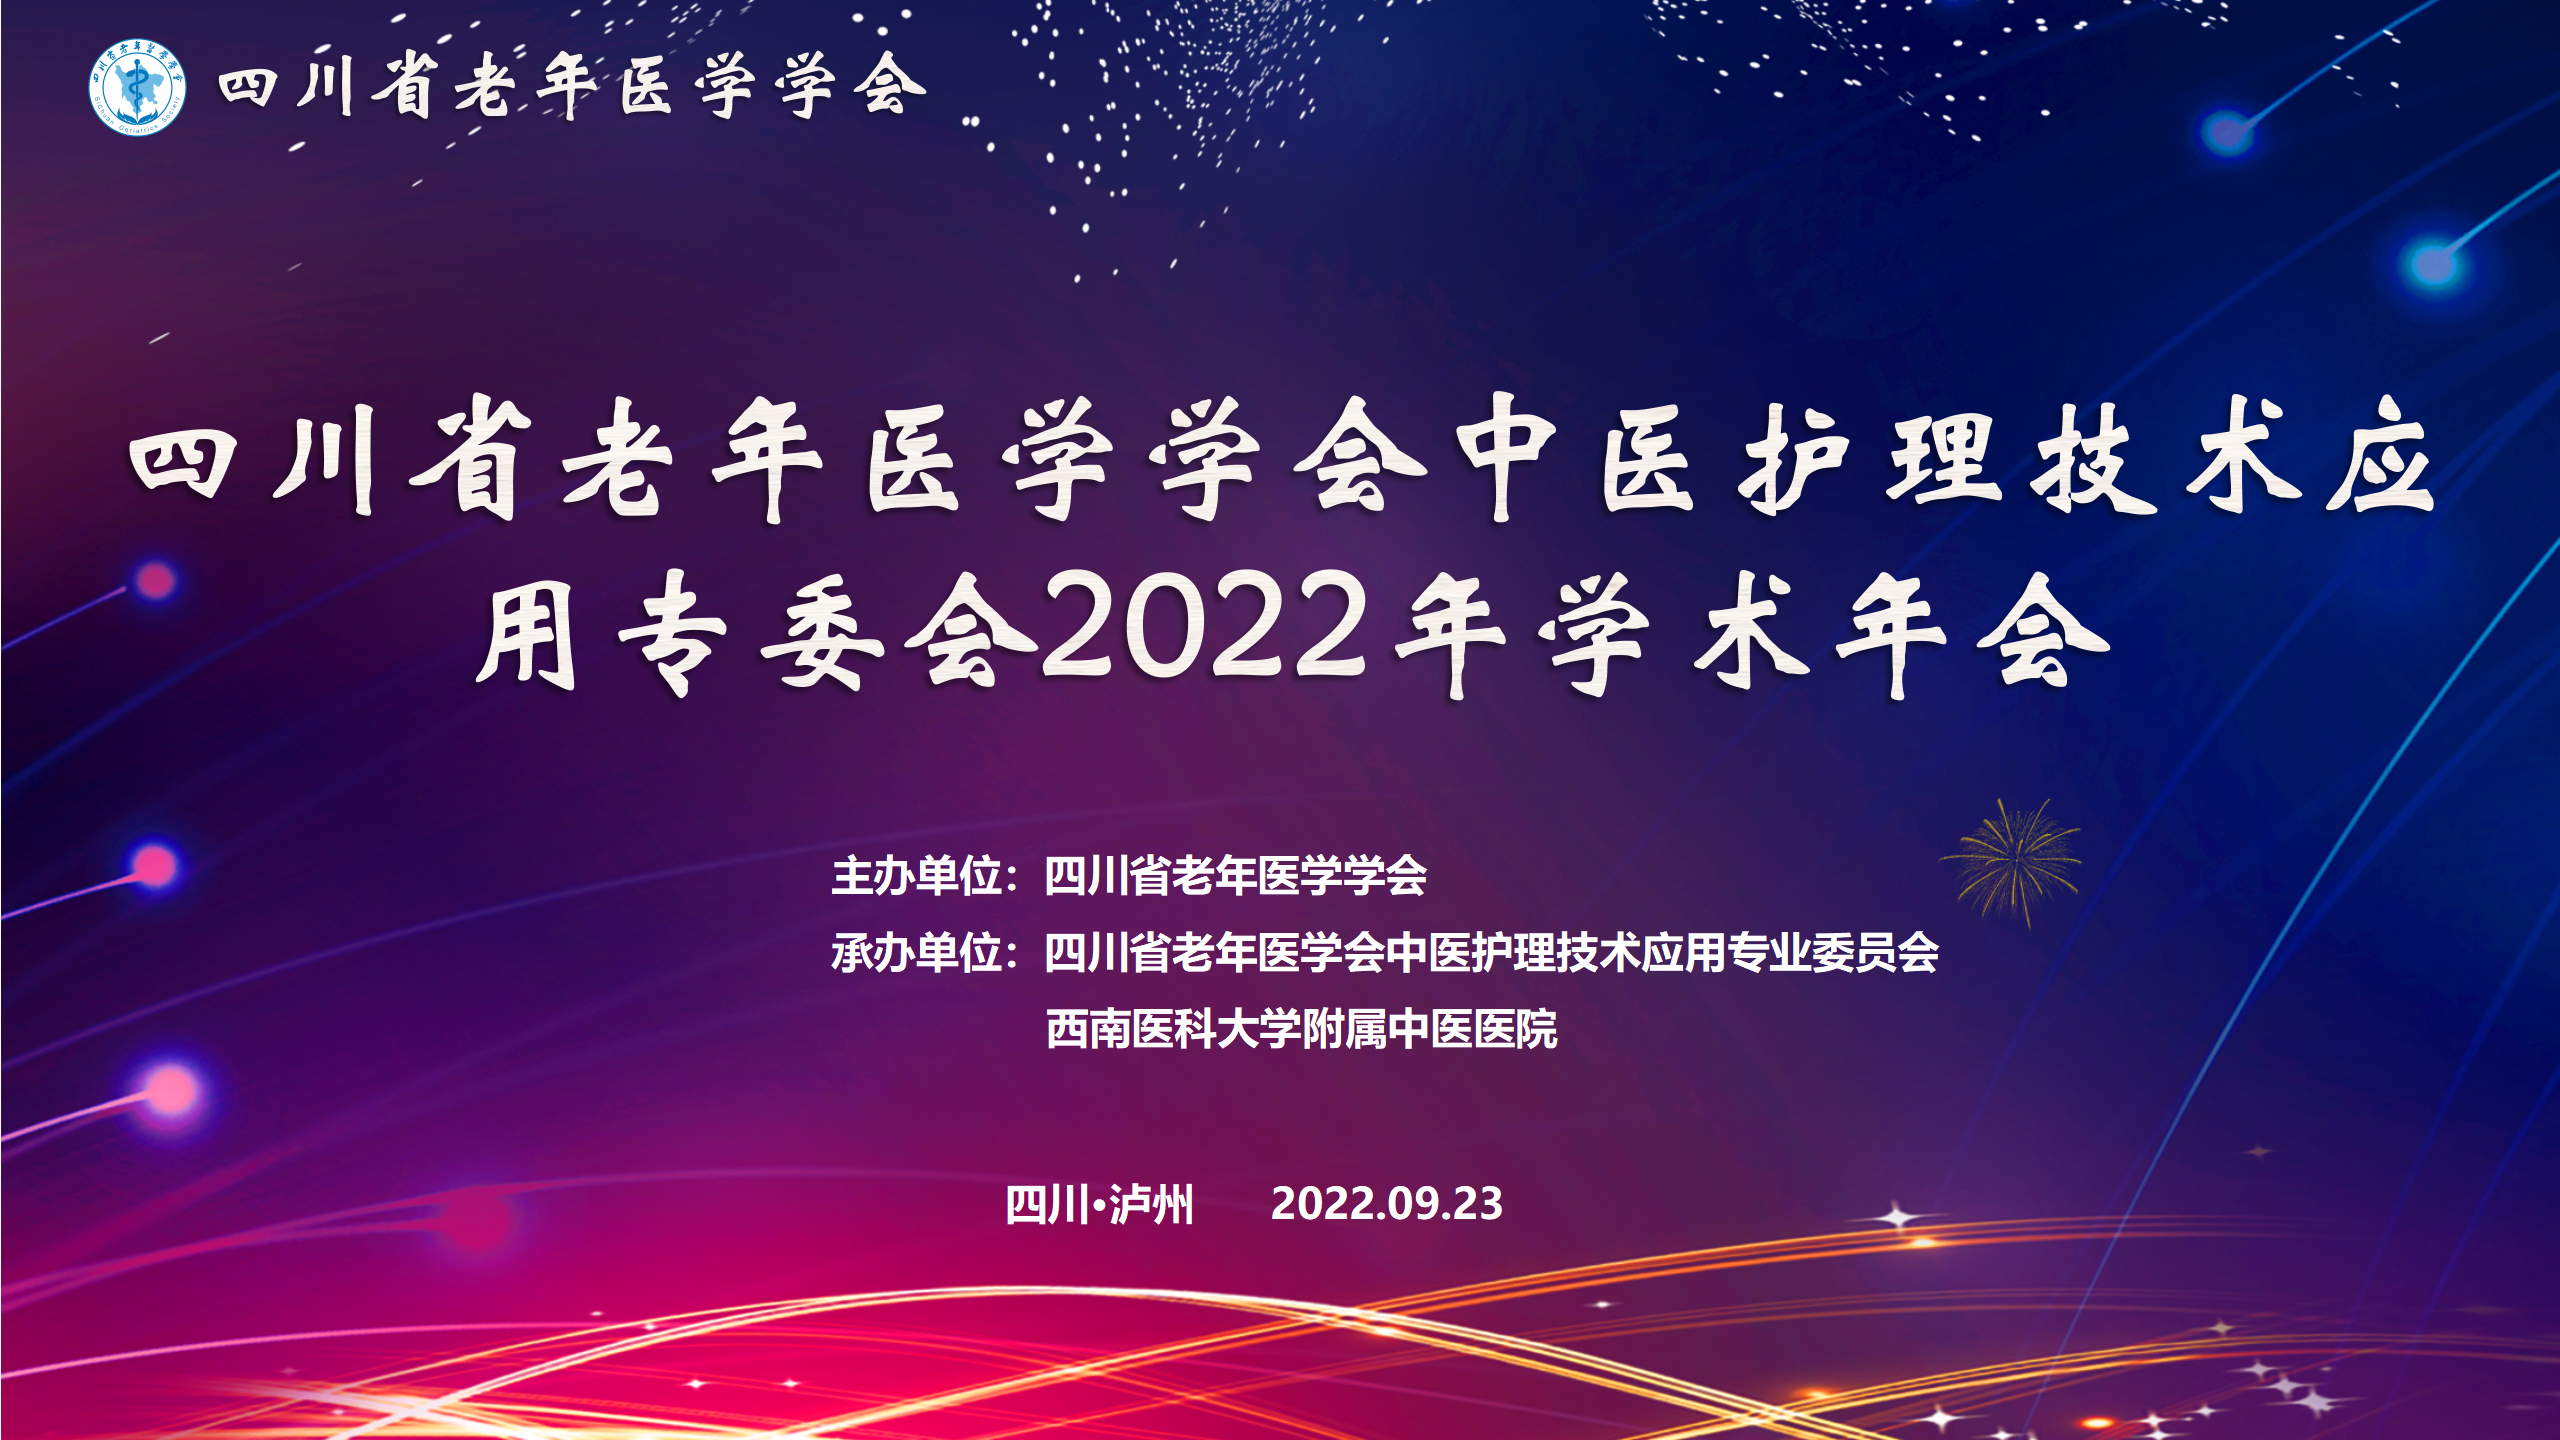 【学会新闻】| 中医护理技术应用专委会2022学术年会圆满结束